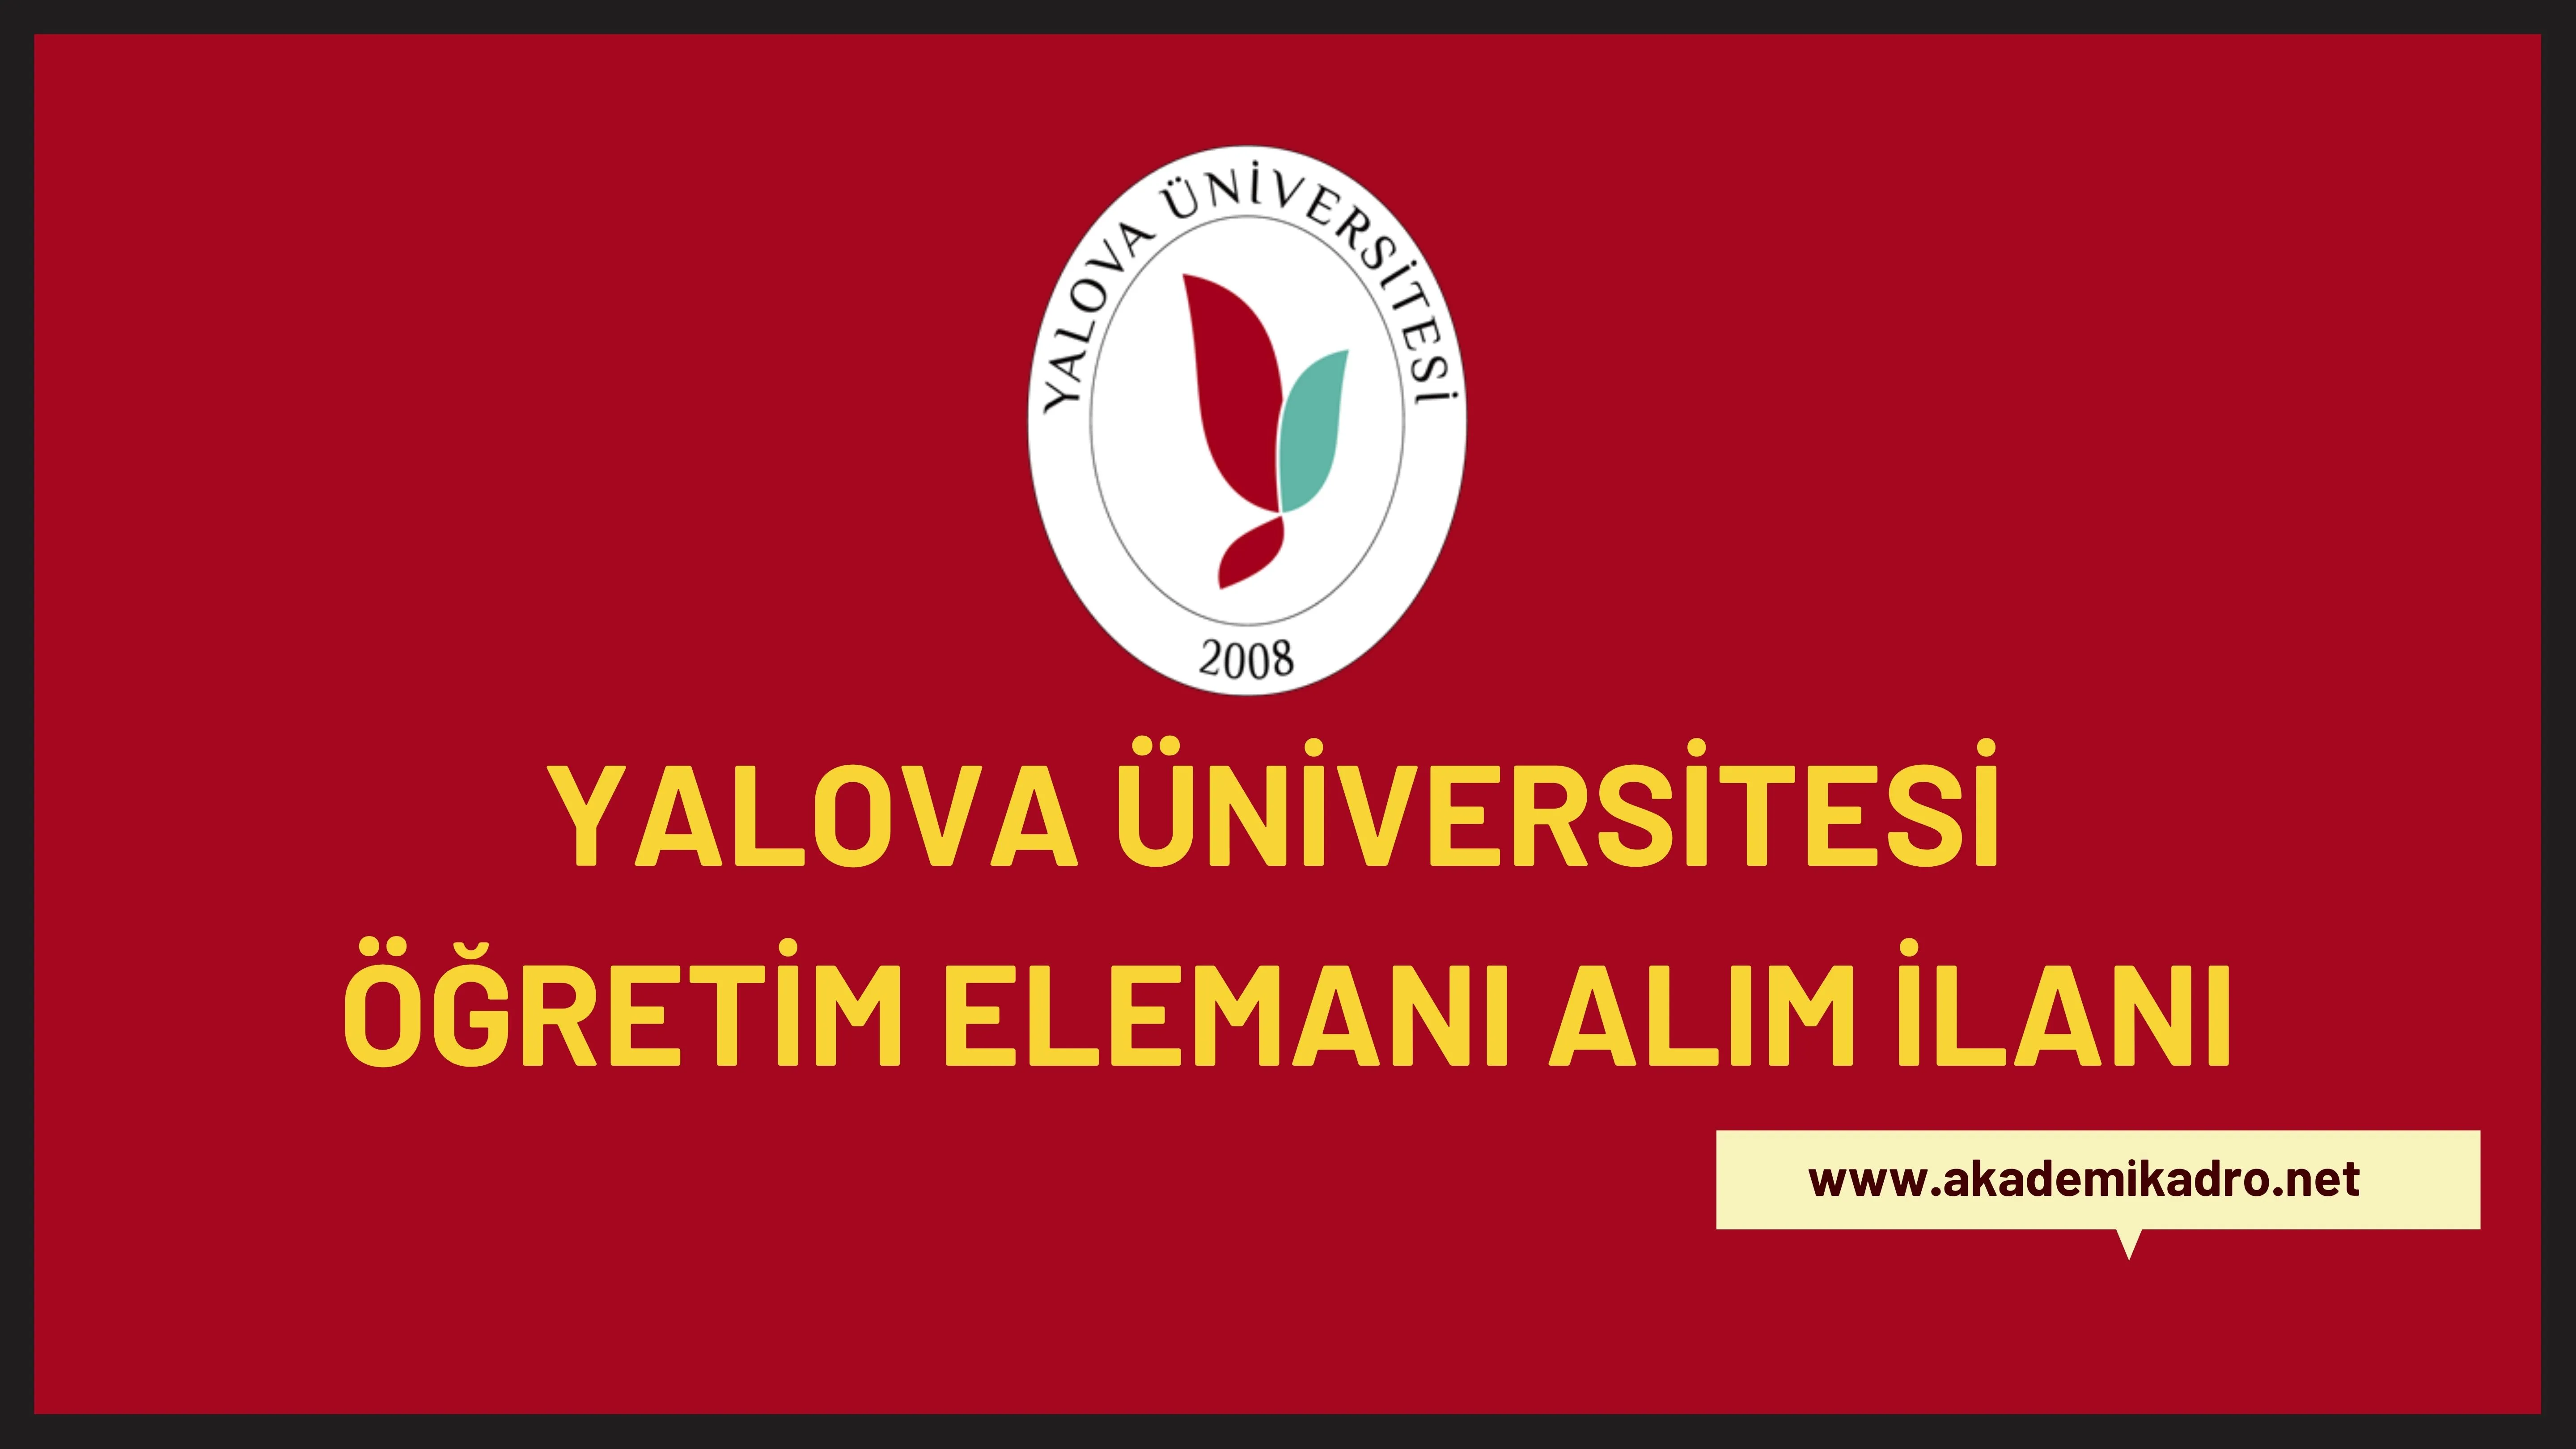 Yalova Üniversitesi 8 Araştırma görevlisi, 7 Öğretim görevlisi ve 14 öğretim üyesi alacaktır. Son başvuru tarihi 14 Ocak 2023